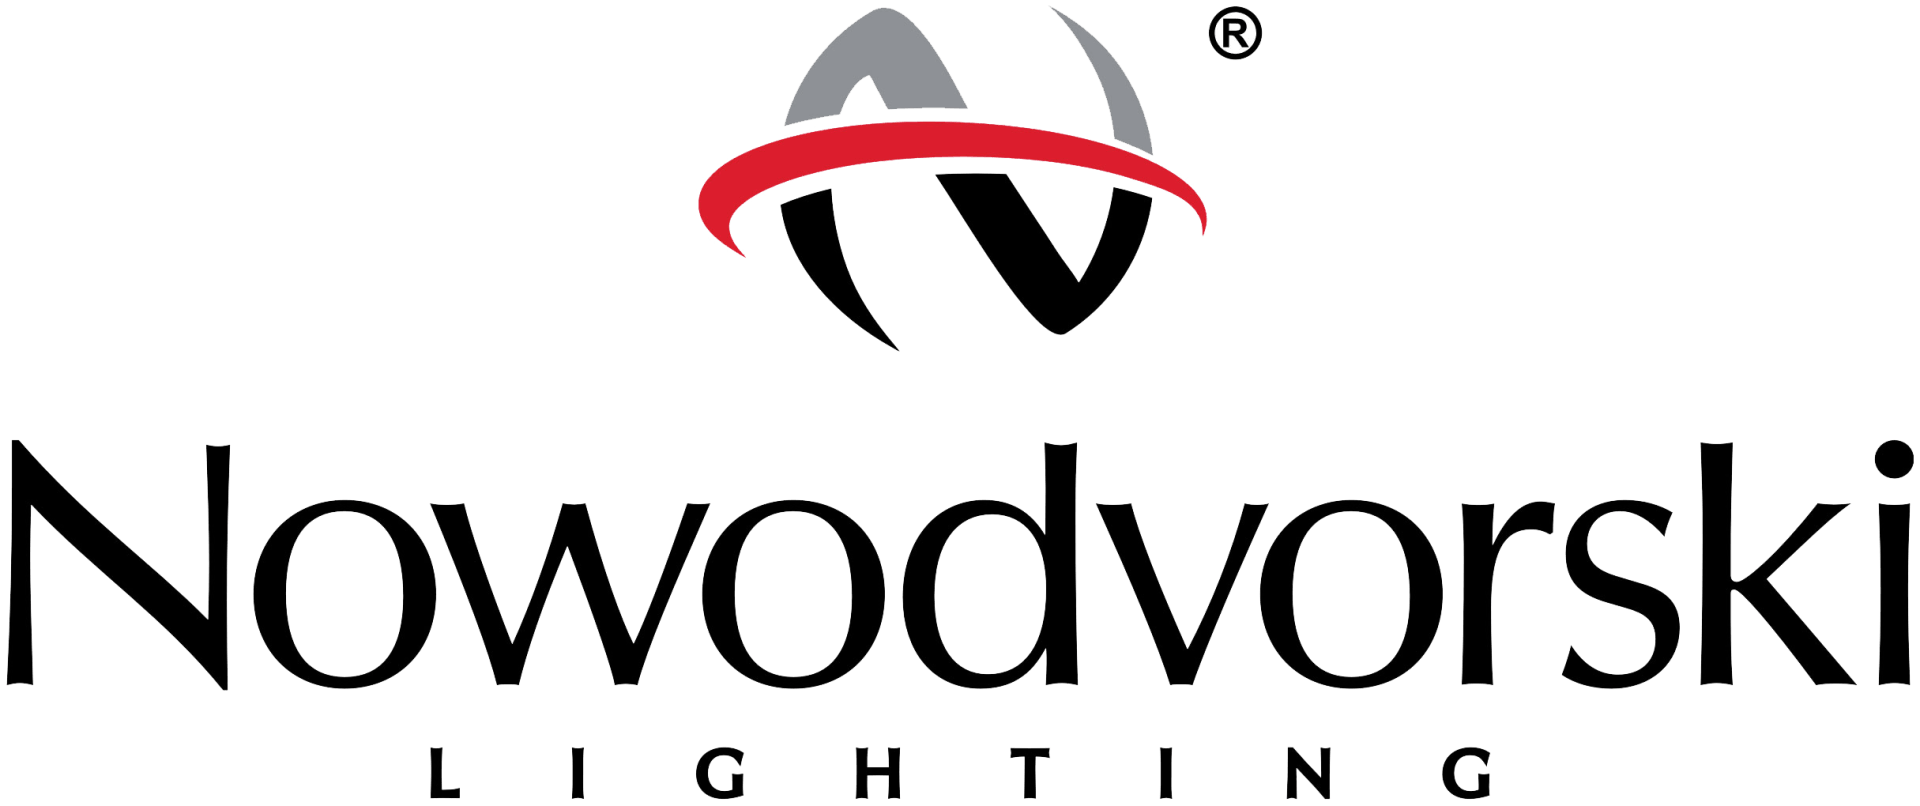 Nowodvorski lighting logo